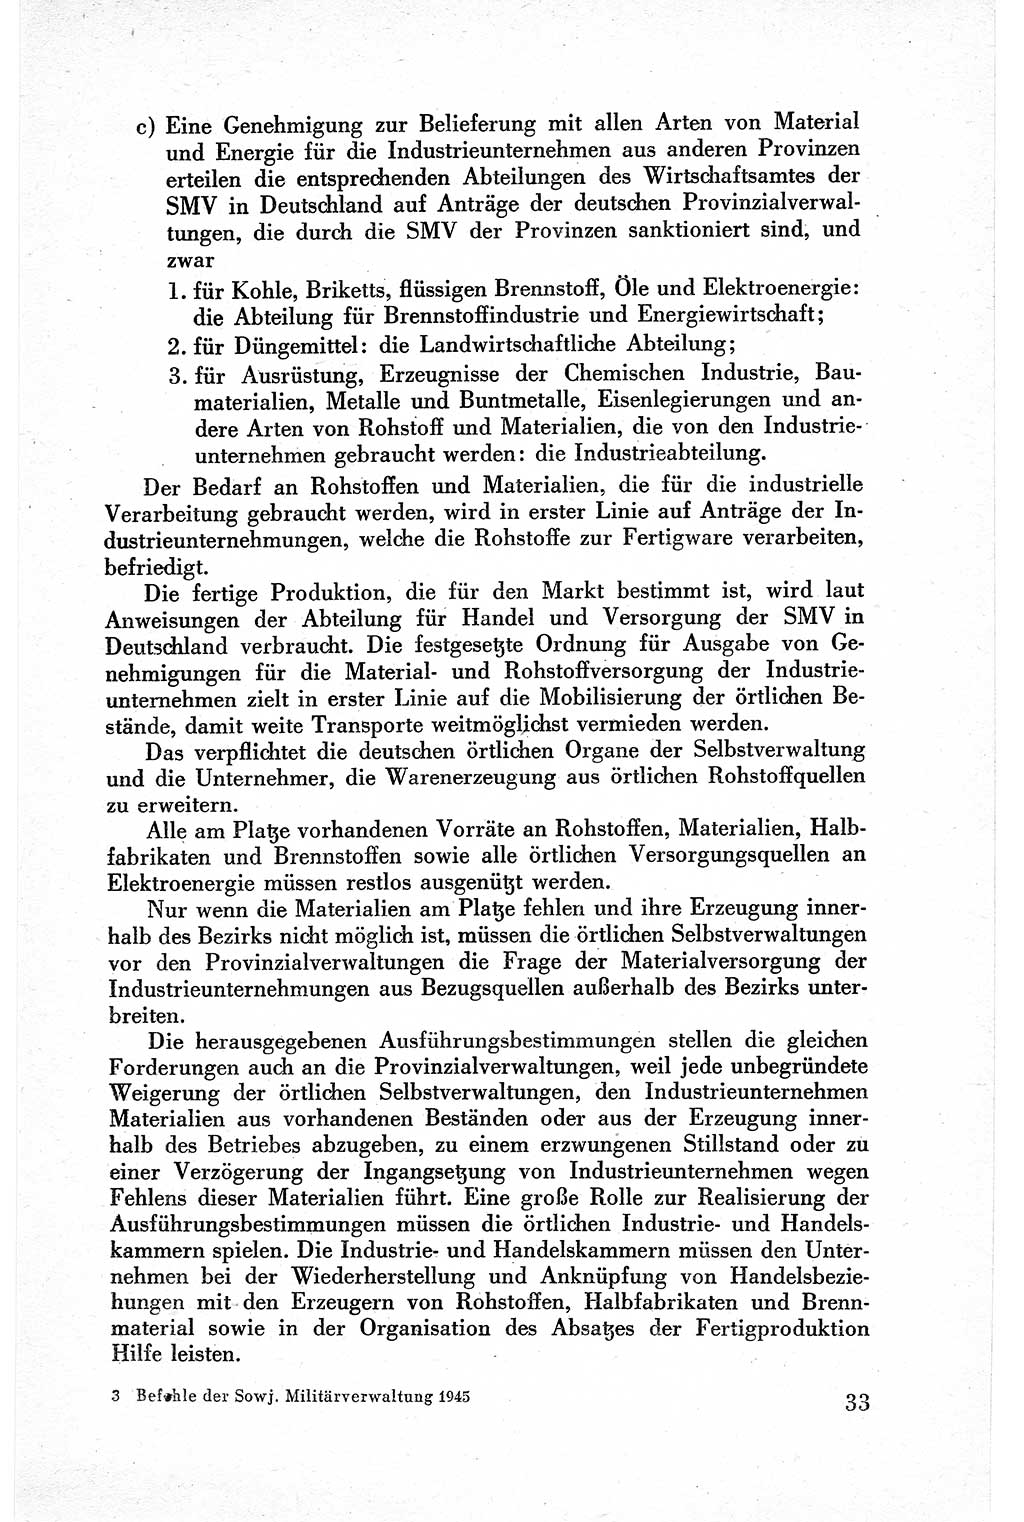 Befehle des Obersten Chefs der Sowjetischen Miltärverwaltung (SMV) in Deutschland - Aus dem Stab der Sowjetischen Militärverwaltung in Deutschland 1945, Seite 33 (Bef. SMV Dtl. 1945, S. 33)